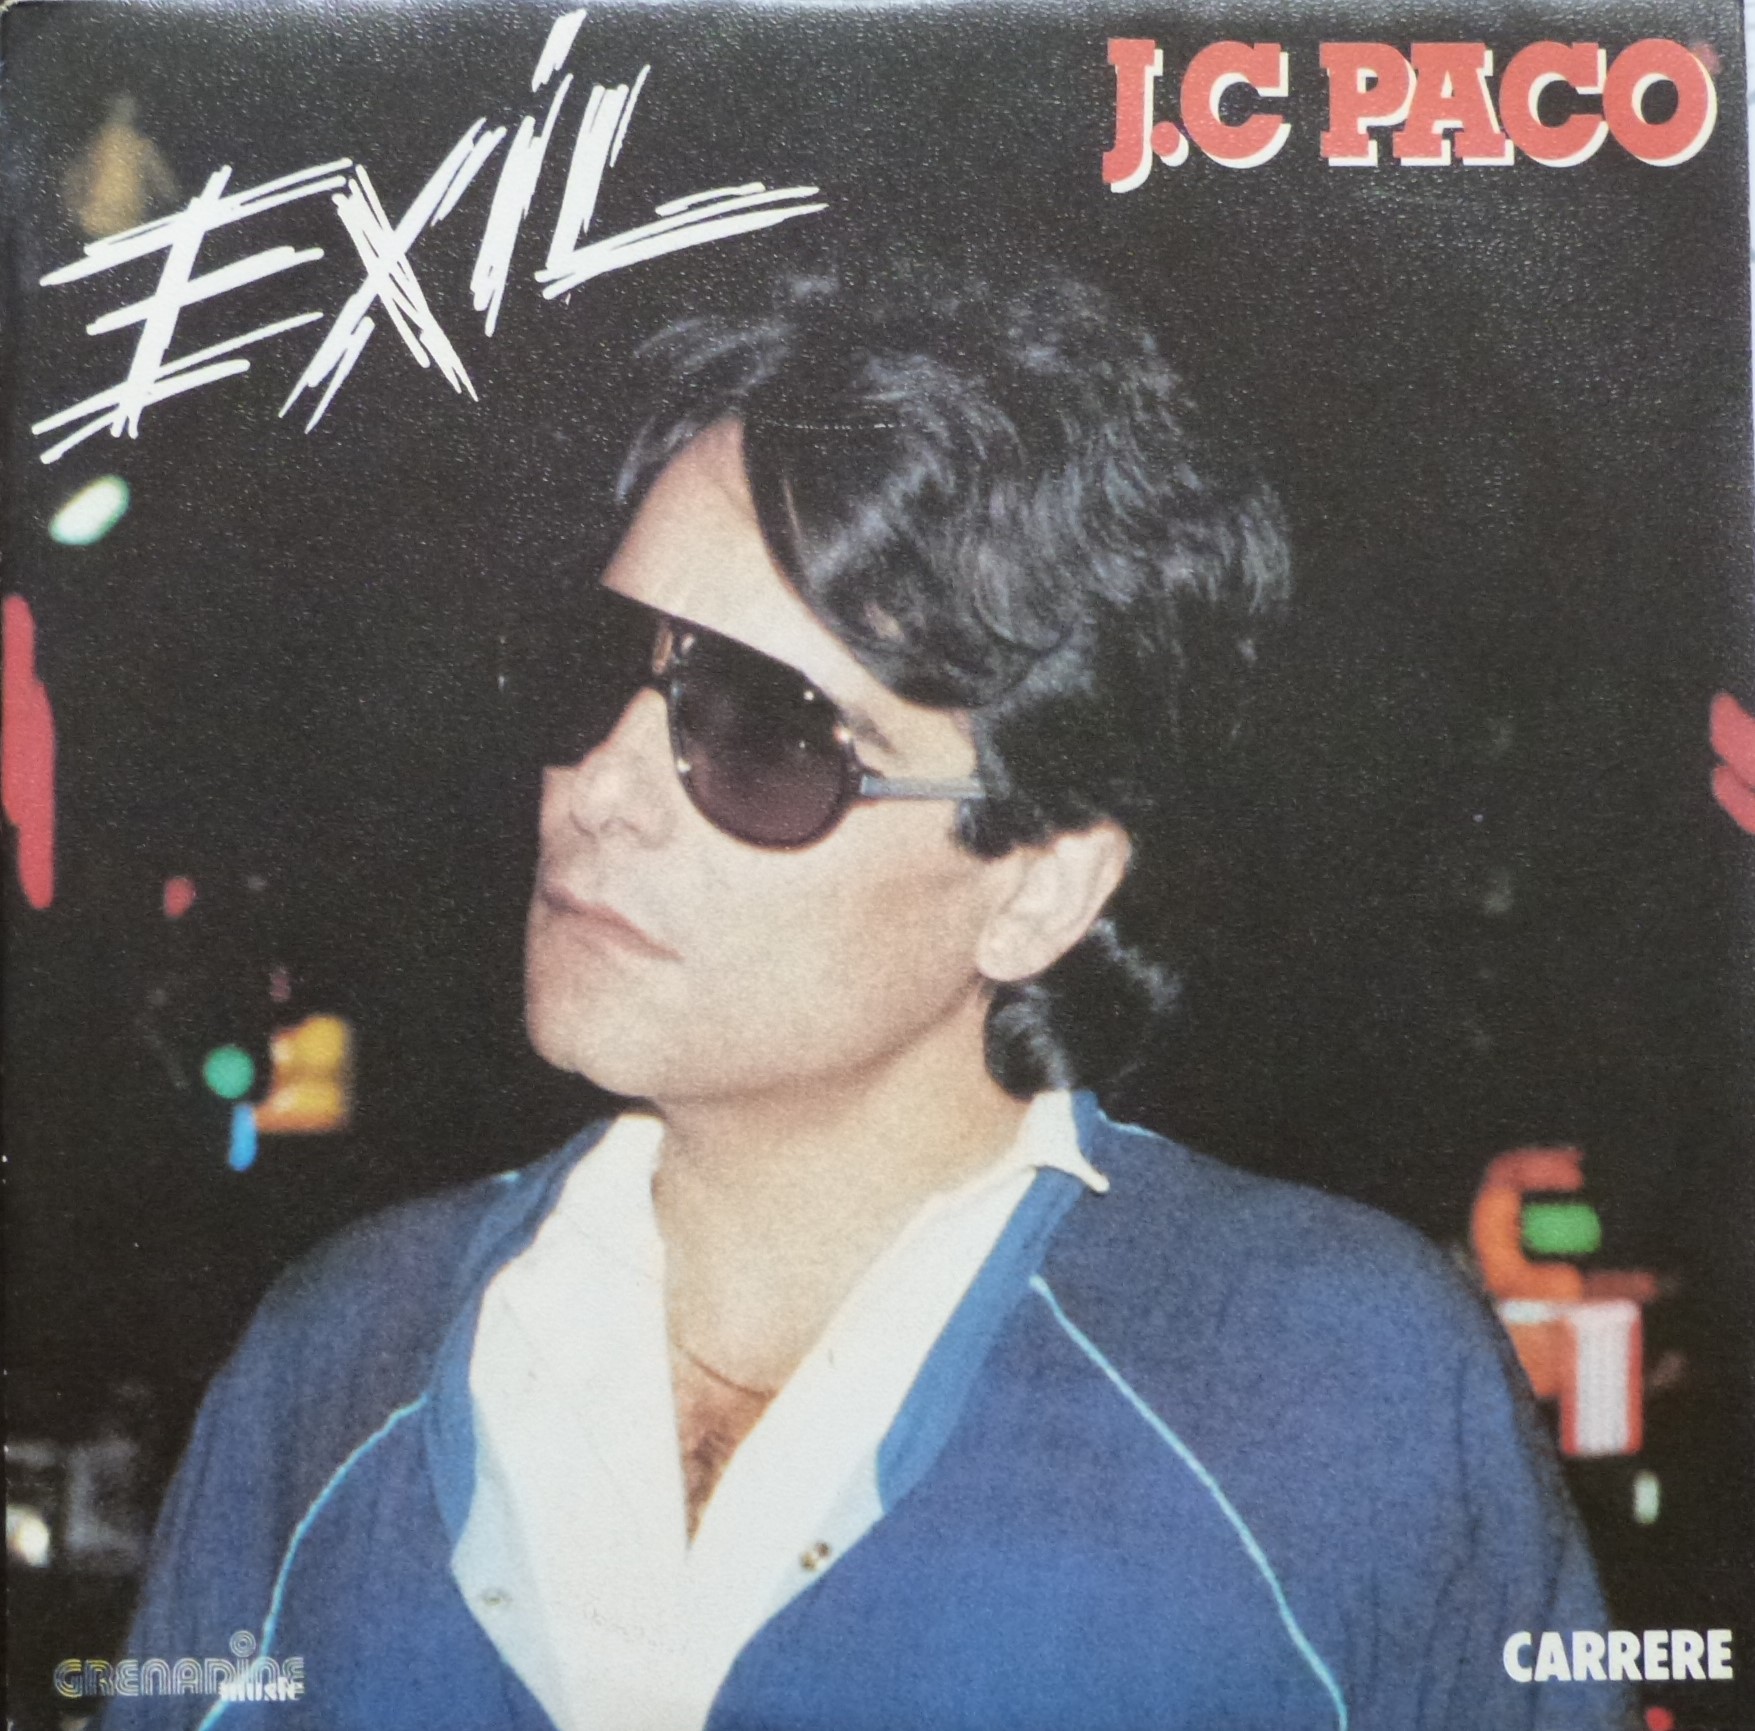 Paco, Exil